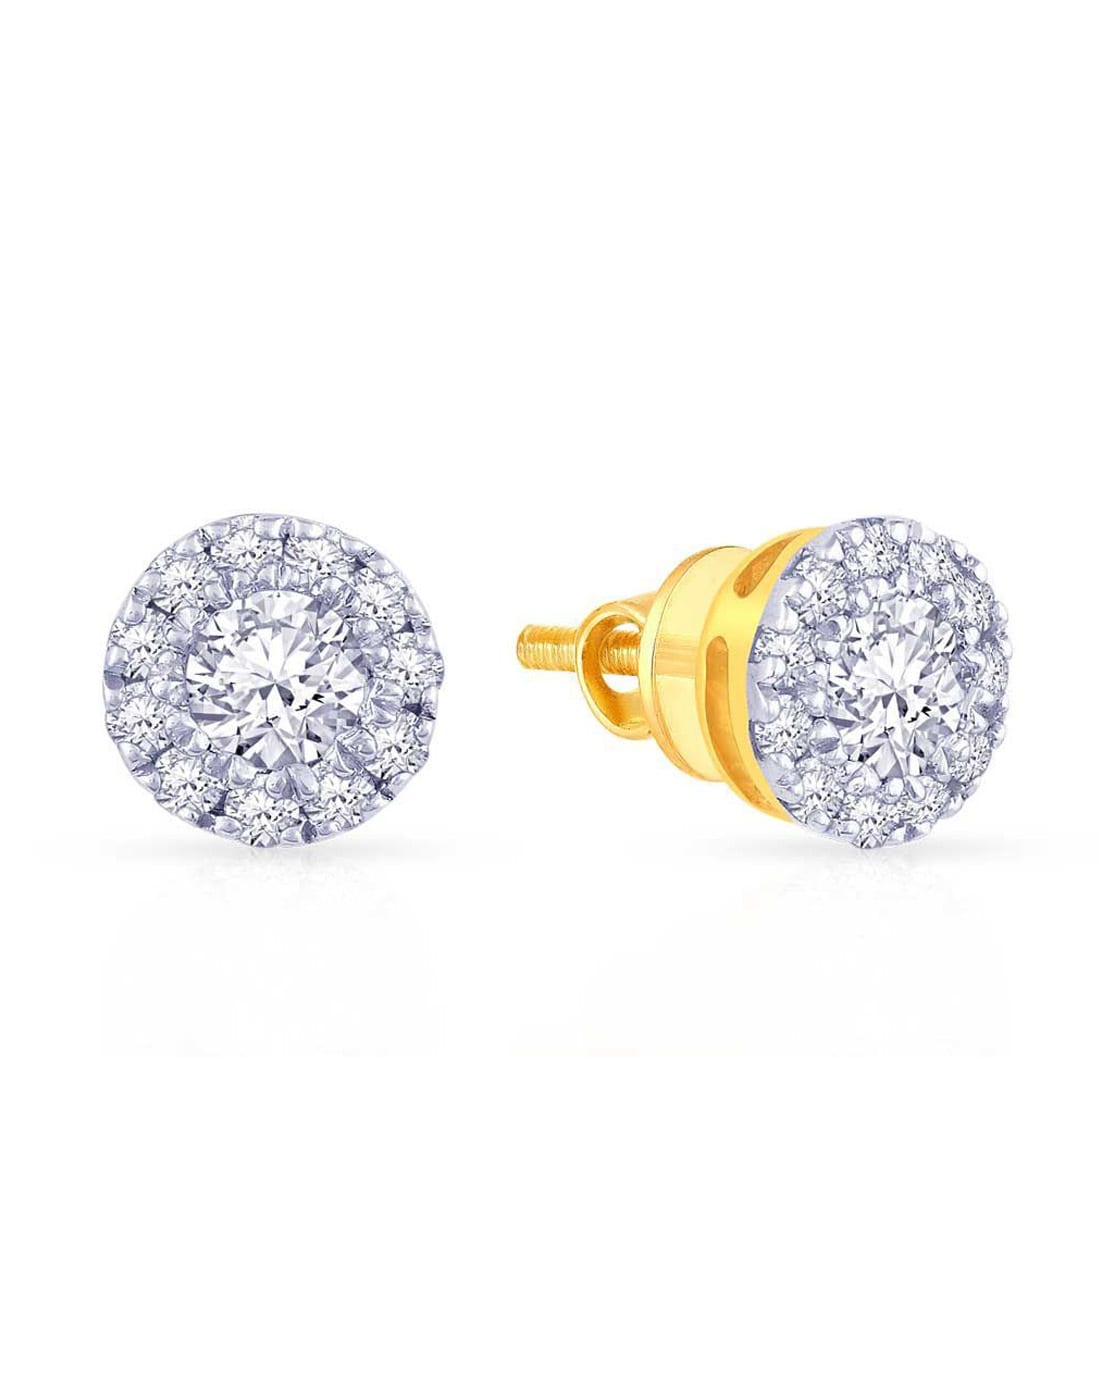 Spiral 18K Yellow Gold Pave Diamond Earrings Studs | Cadar – CADAR